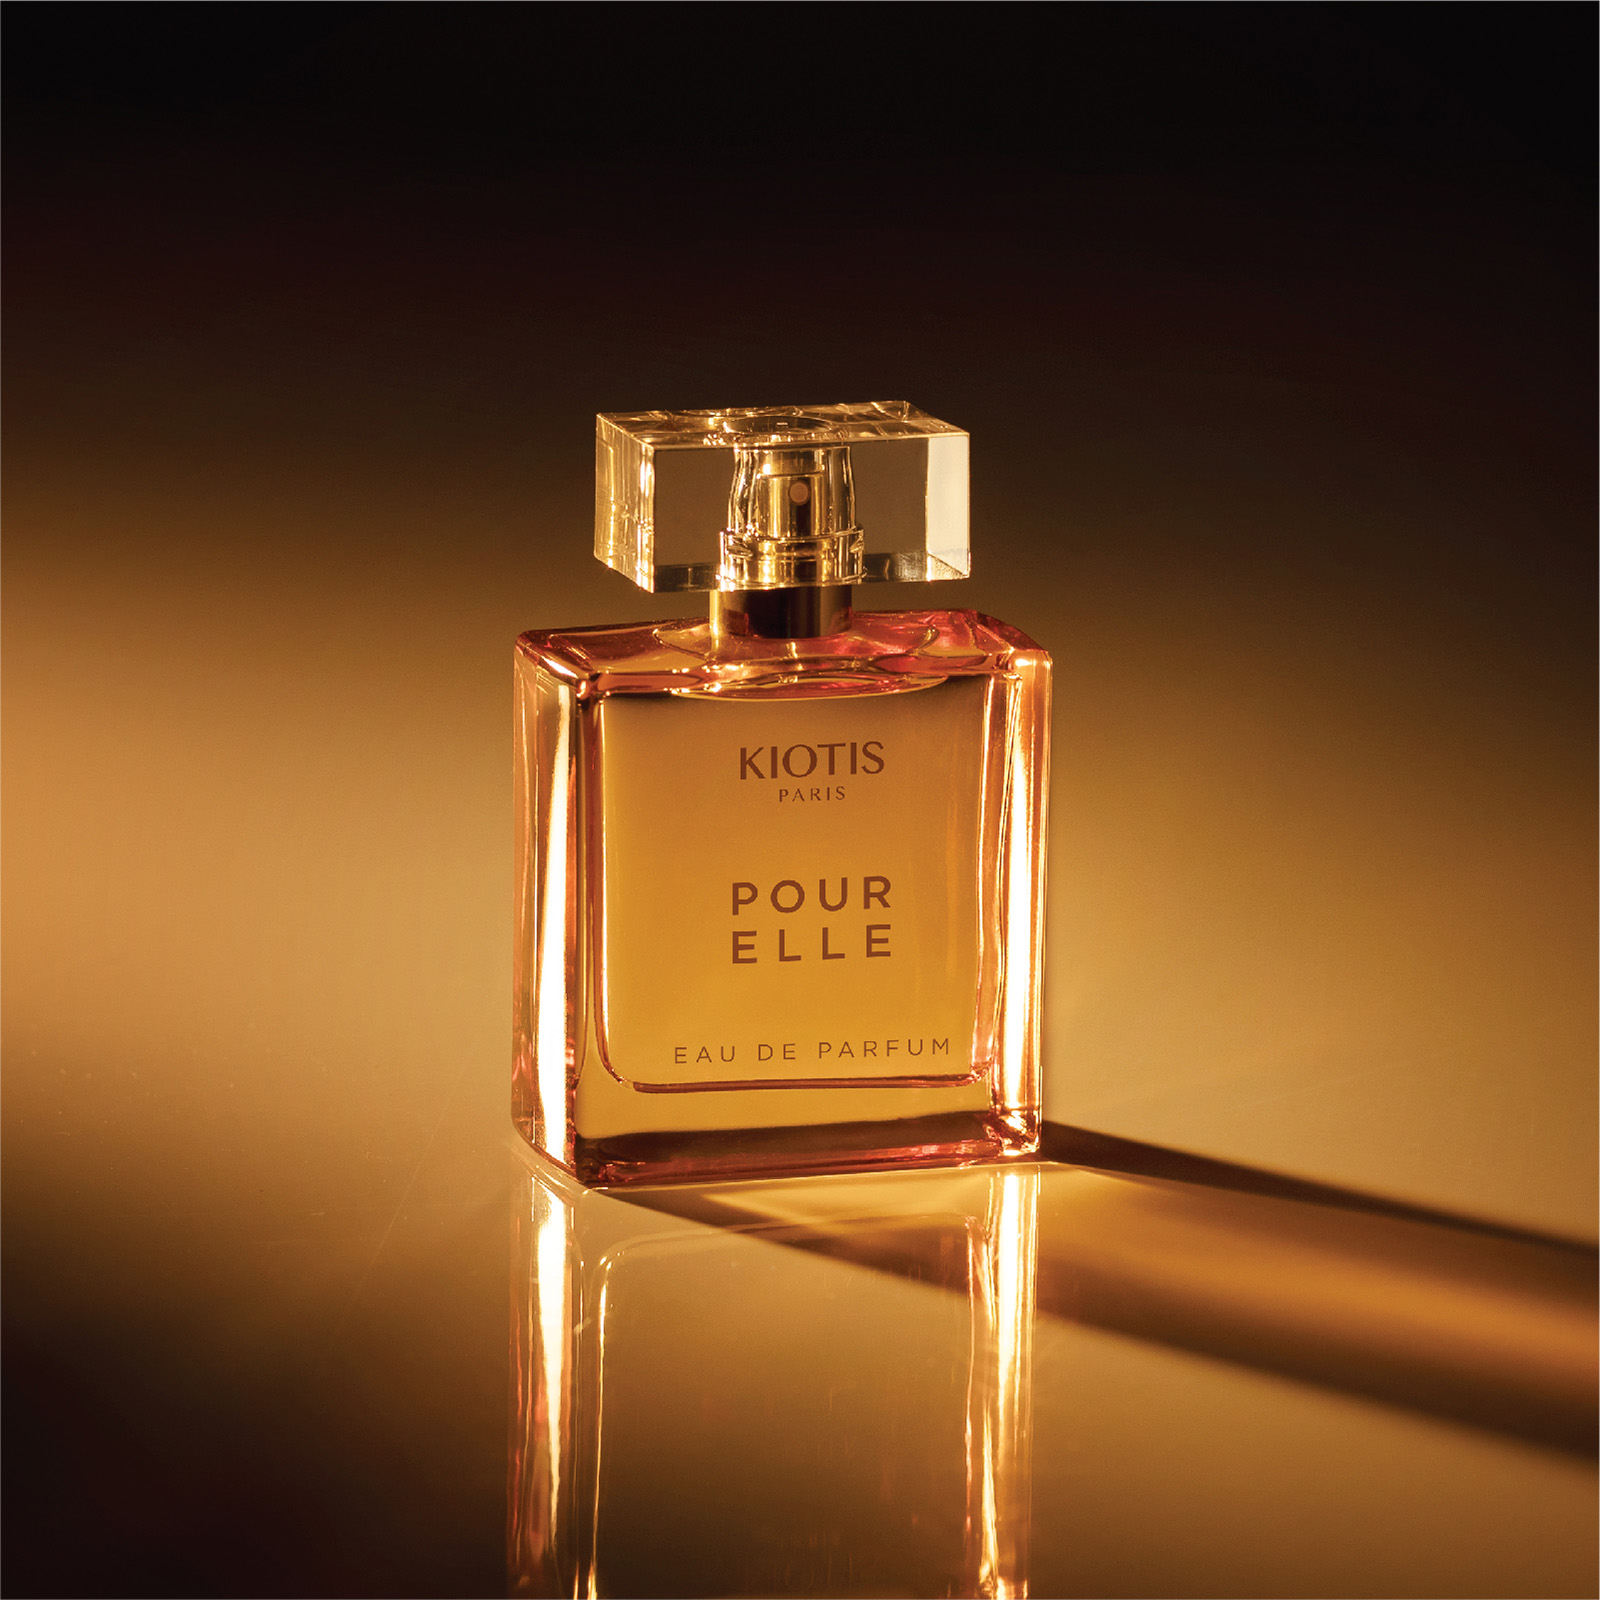 Nước hoa cao cấp cho nữ giới Kiotis Paris pour elle eau de parfum 50ml